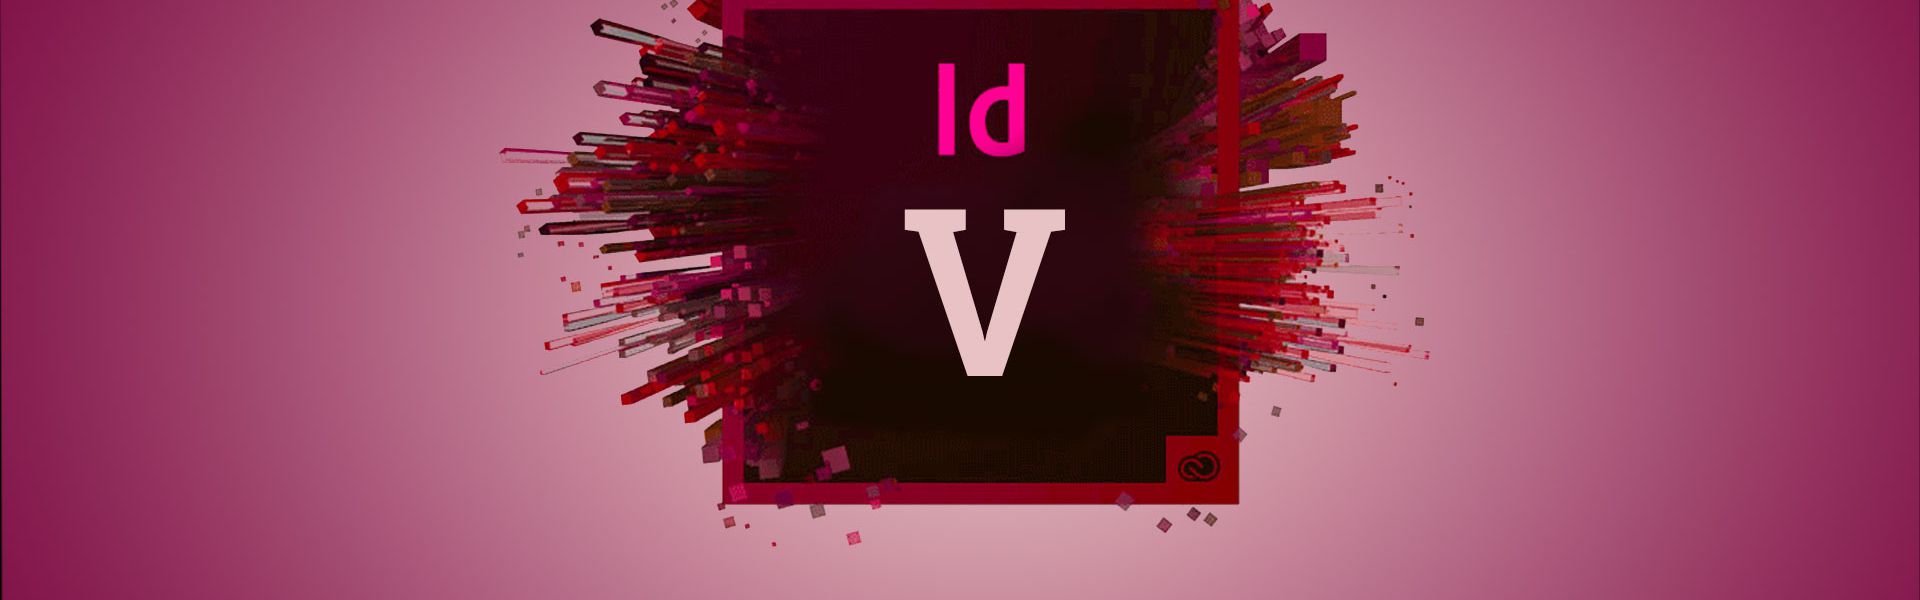 Adobe InDesign Teksten vervolg - V